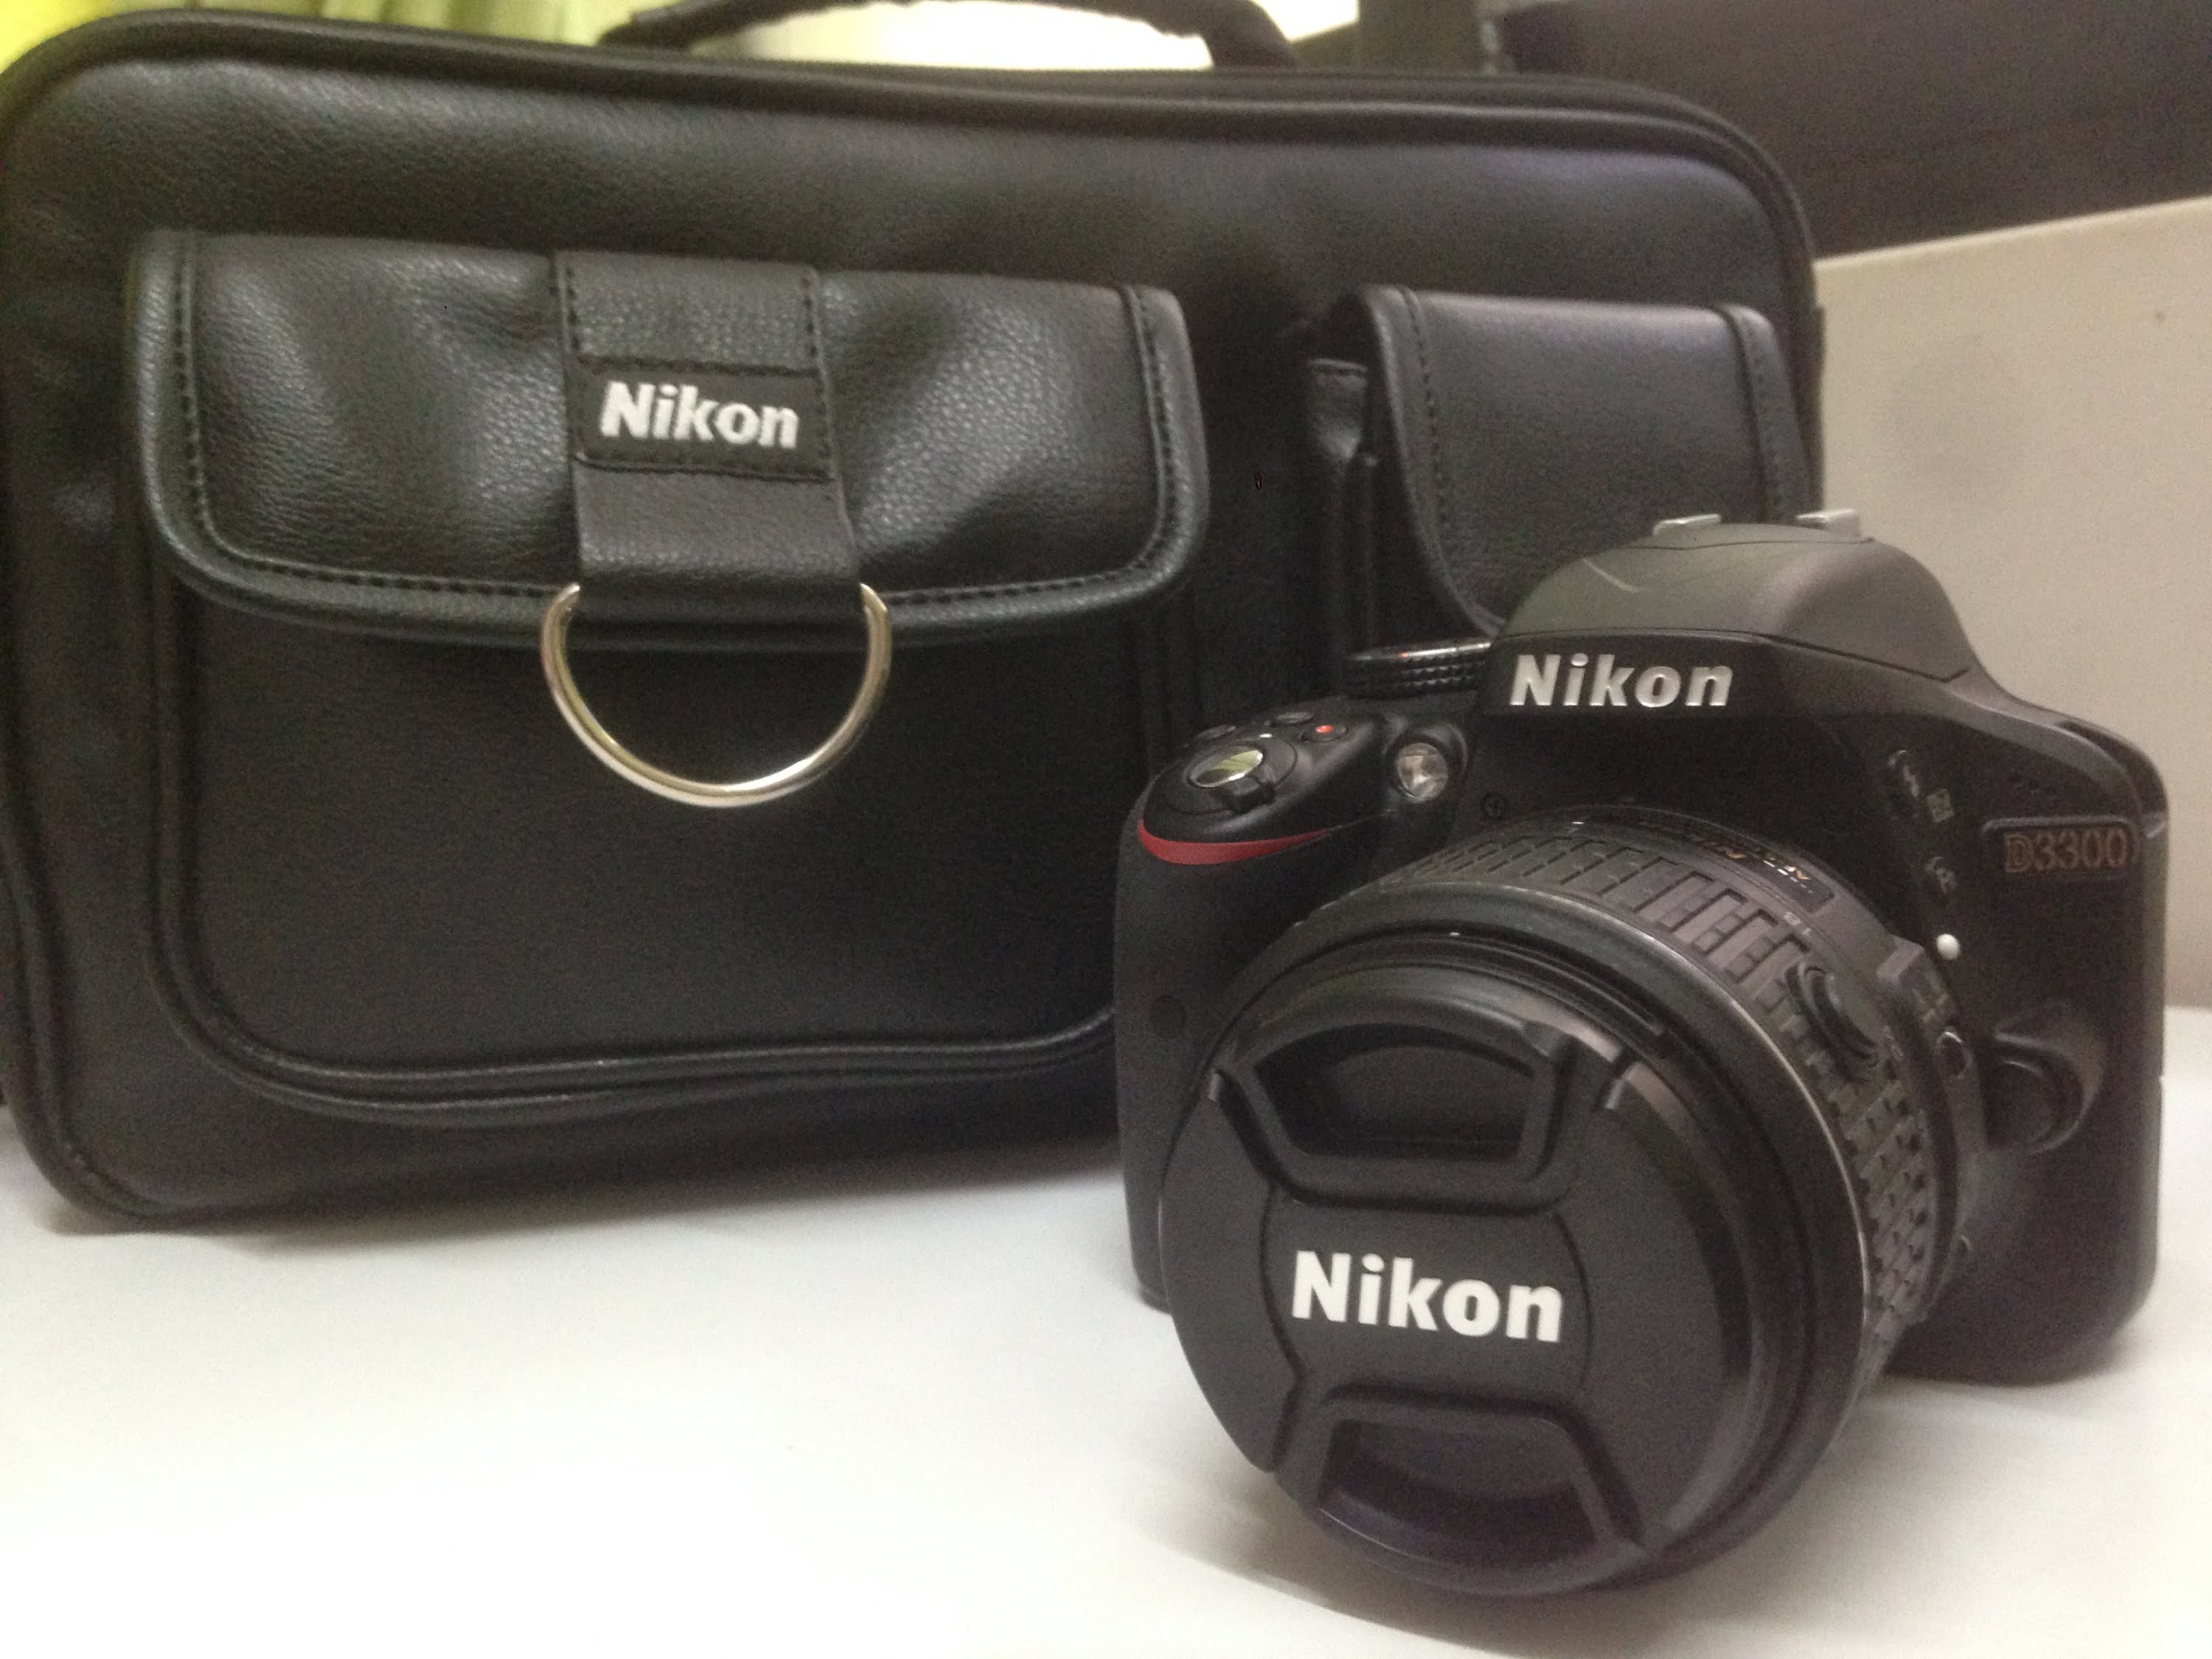 Nikon D3300 with AF-S 18-55mm VRII Kit Lens Unboxing